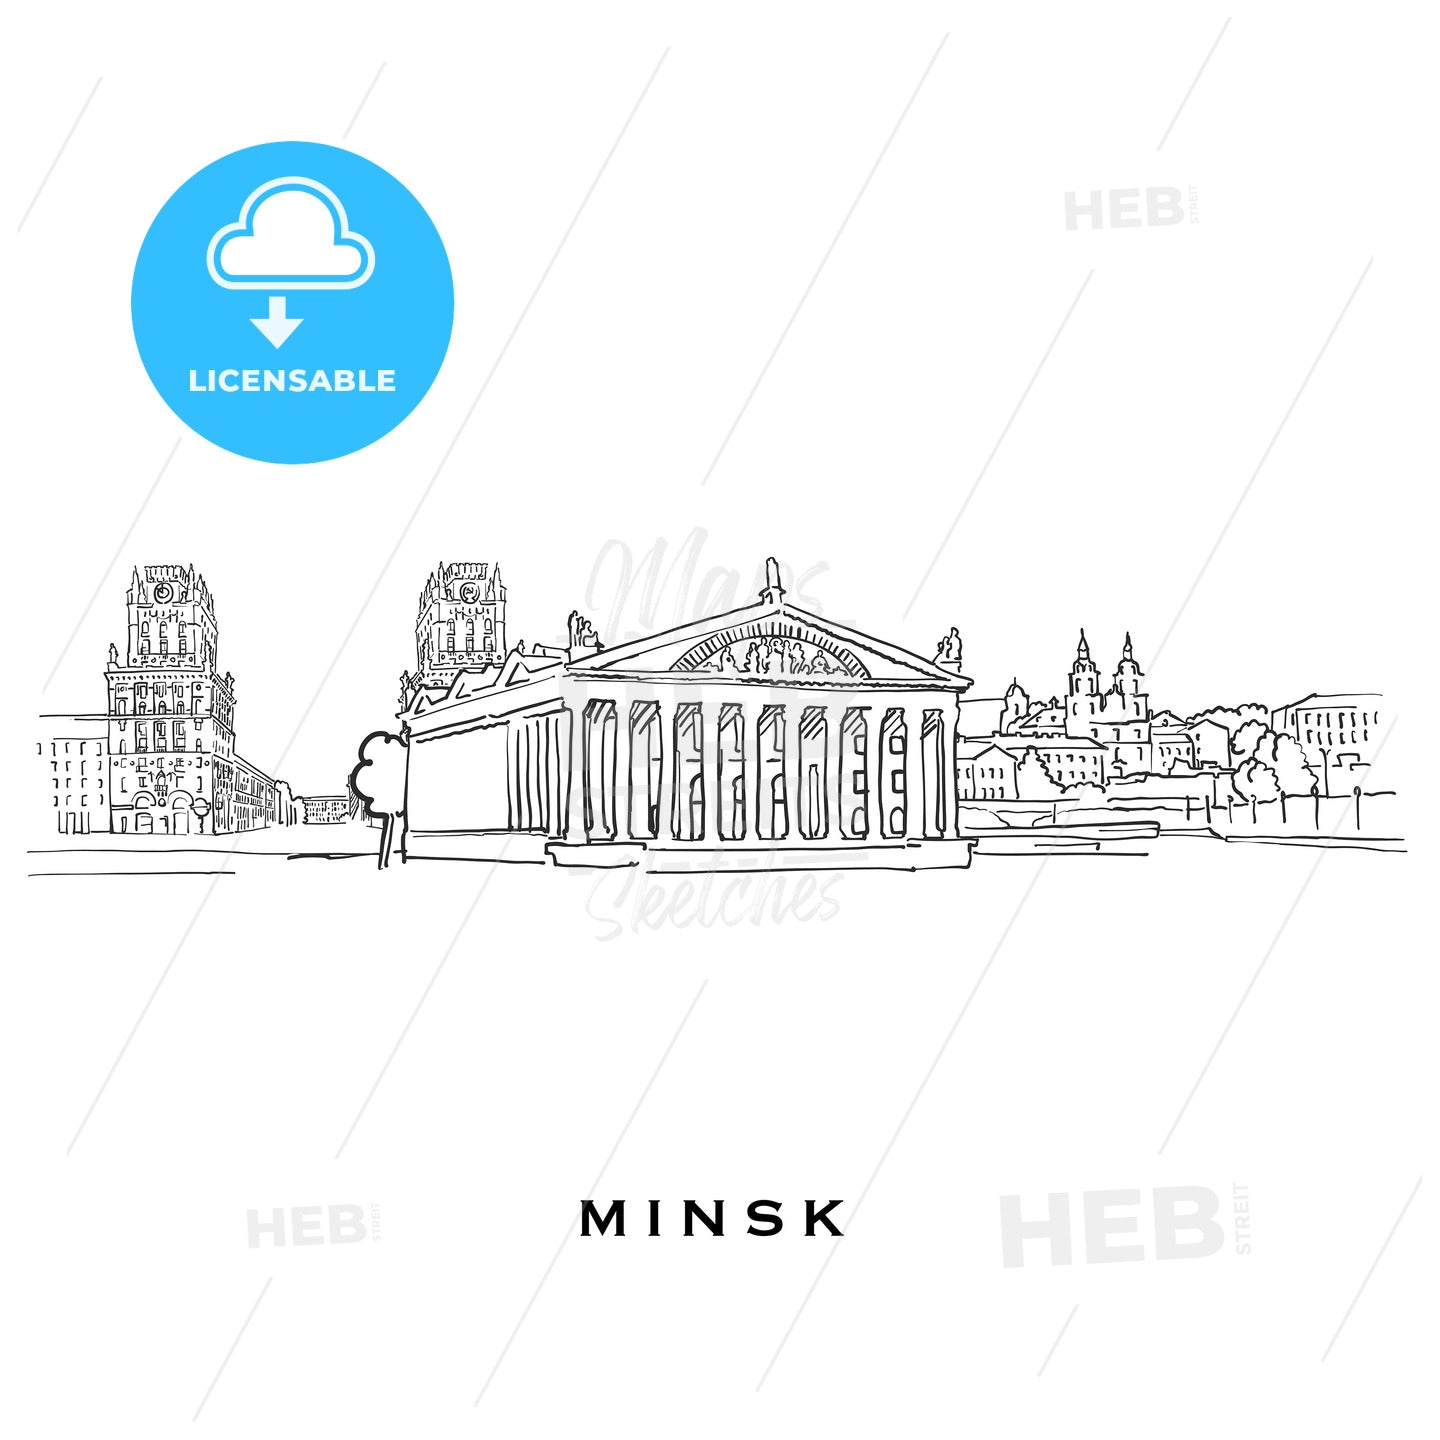 Minsk Belarus famous architecture – instant download